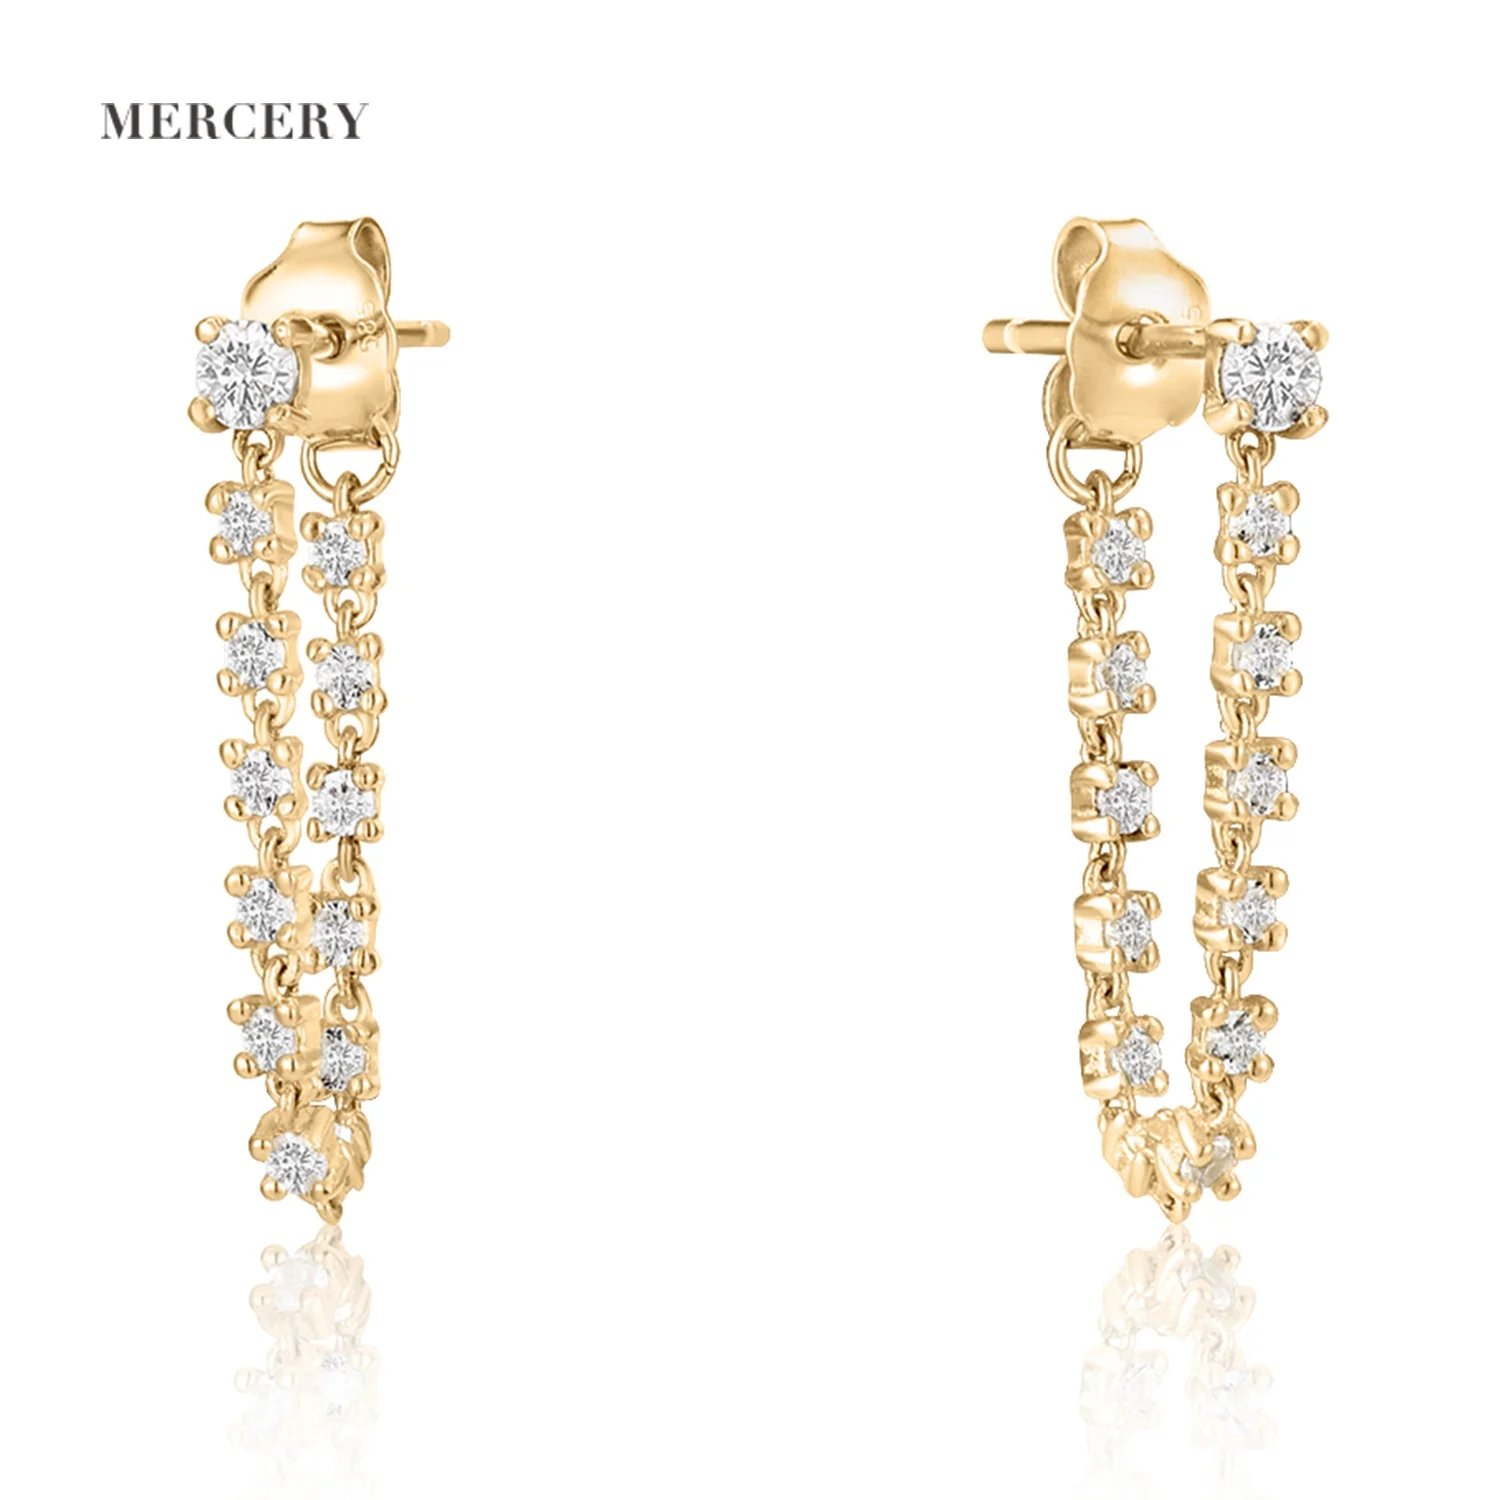 

Mercery Women Earrings Trendy Jewelry Beautifully Designed Topaz Stone Drop Chain Earrings 14k Solid Gold Stud Earring For Girls